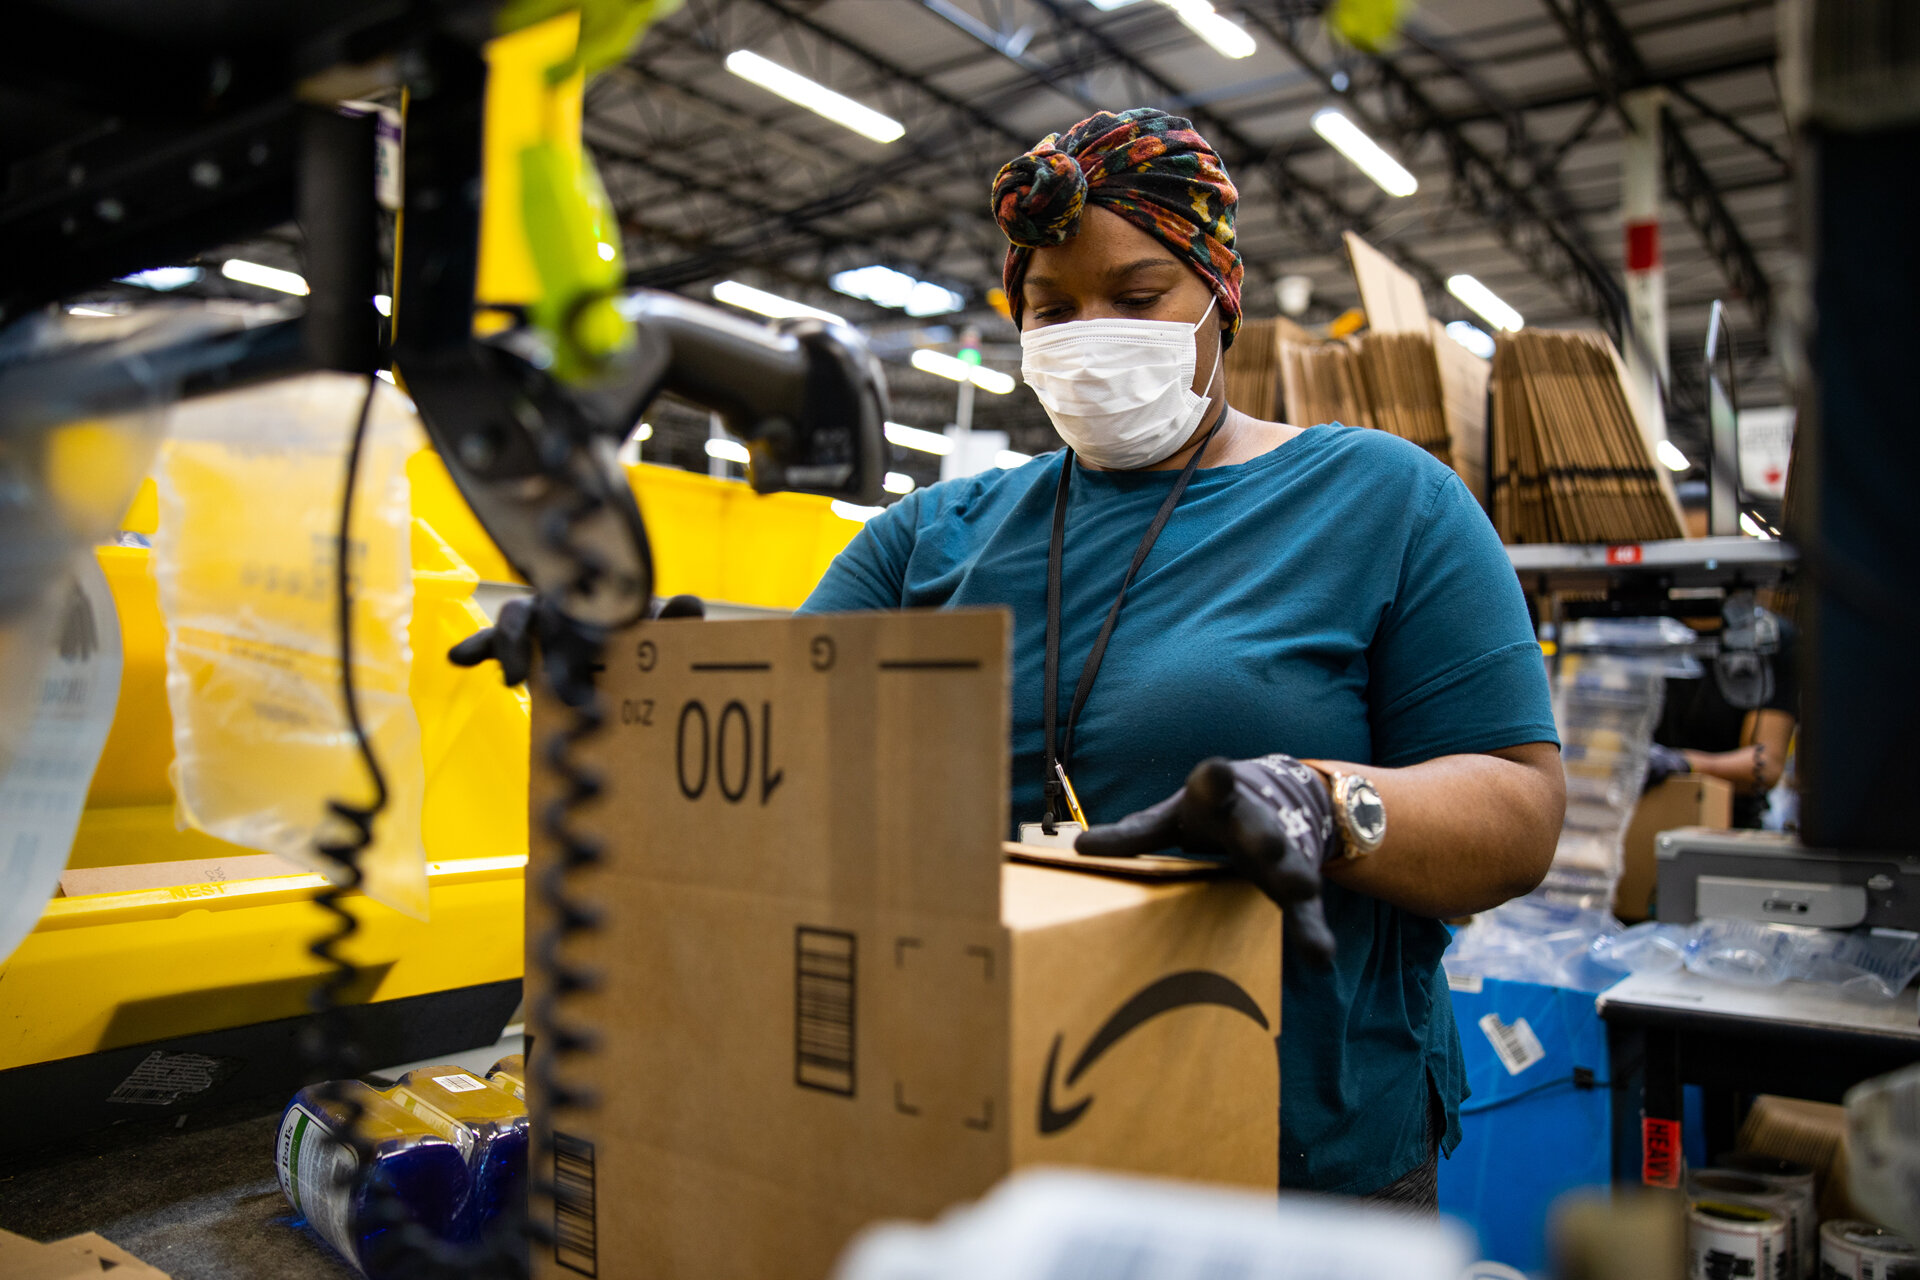 Σχεδόν 20.000 υπάλληλοι της Amazon έχουν μολυνθεί από τον κορονοϊό